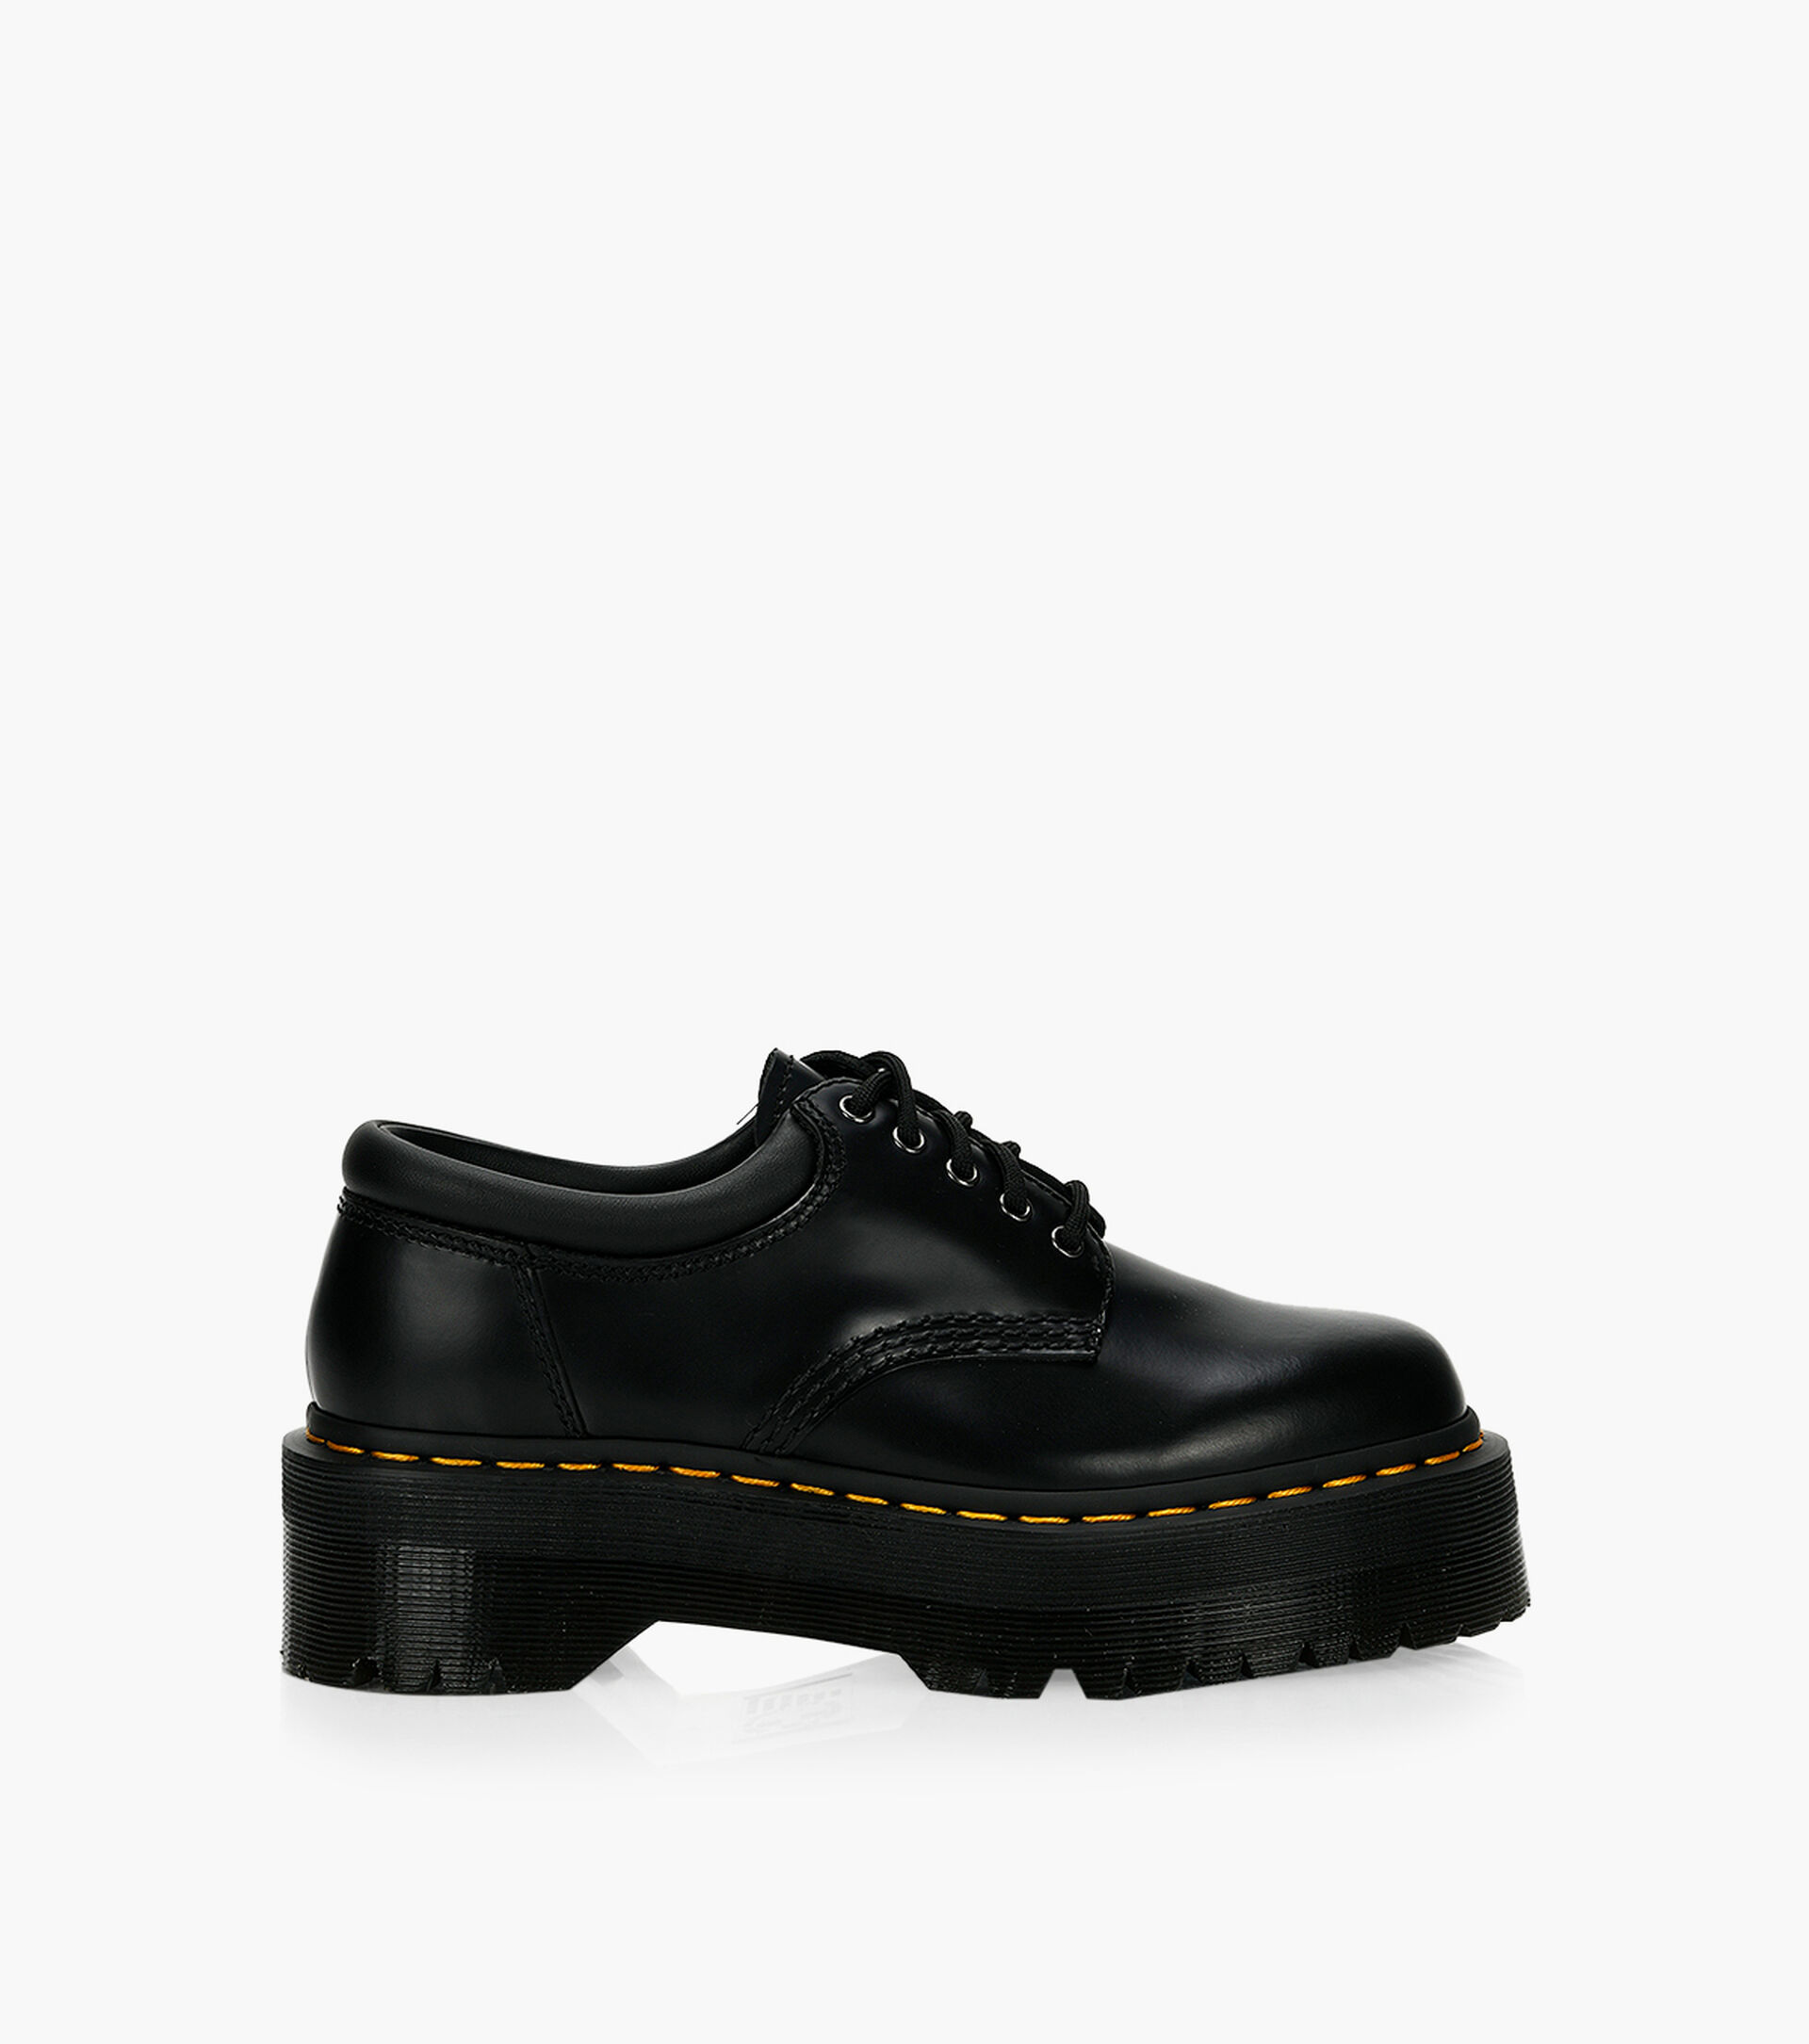 DR. MARTENS 8053 QUAD PLATFORM - Black Leather | Browns Shoes